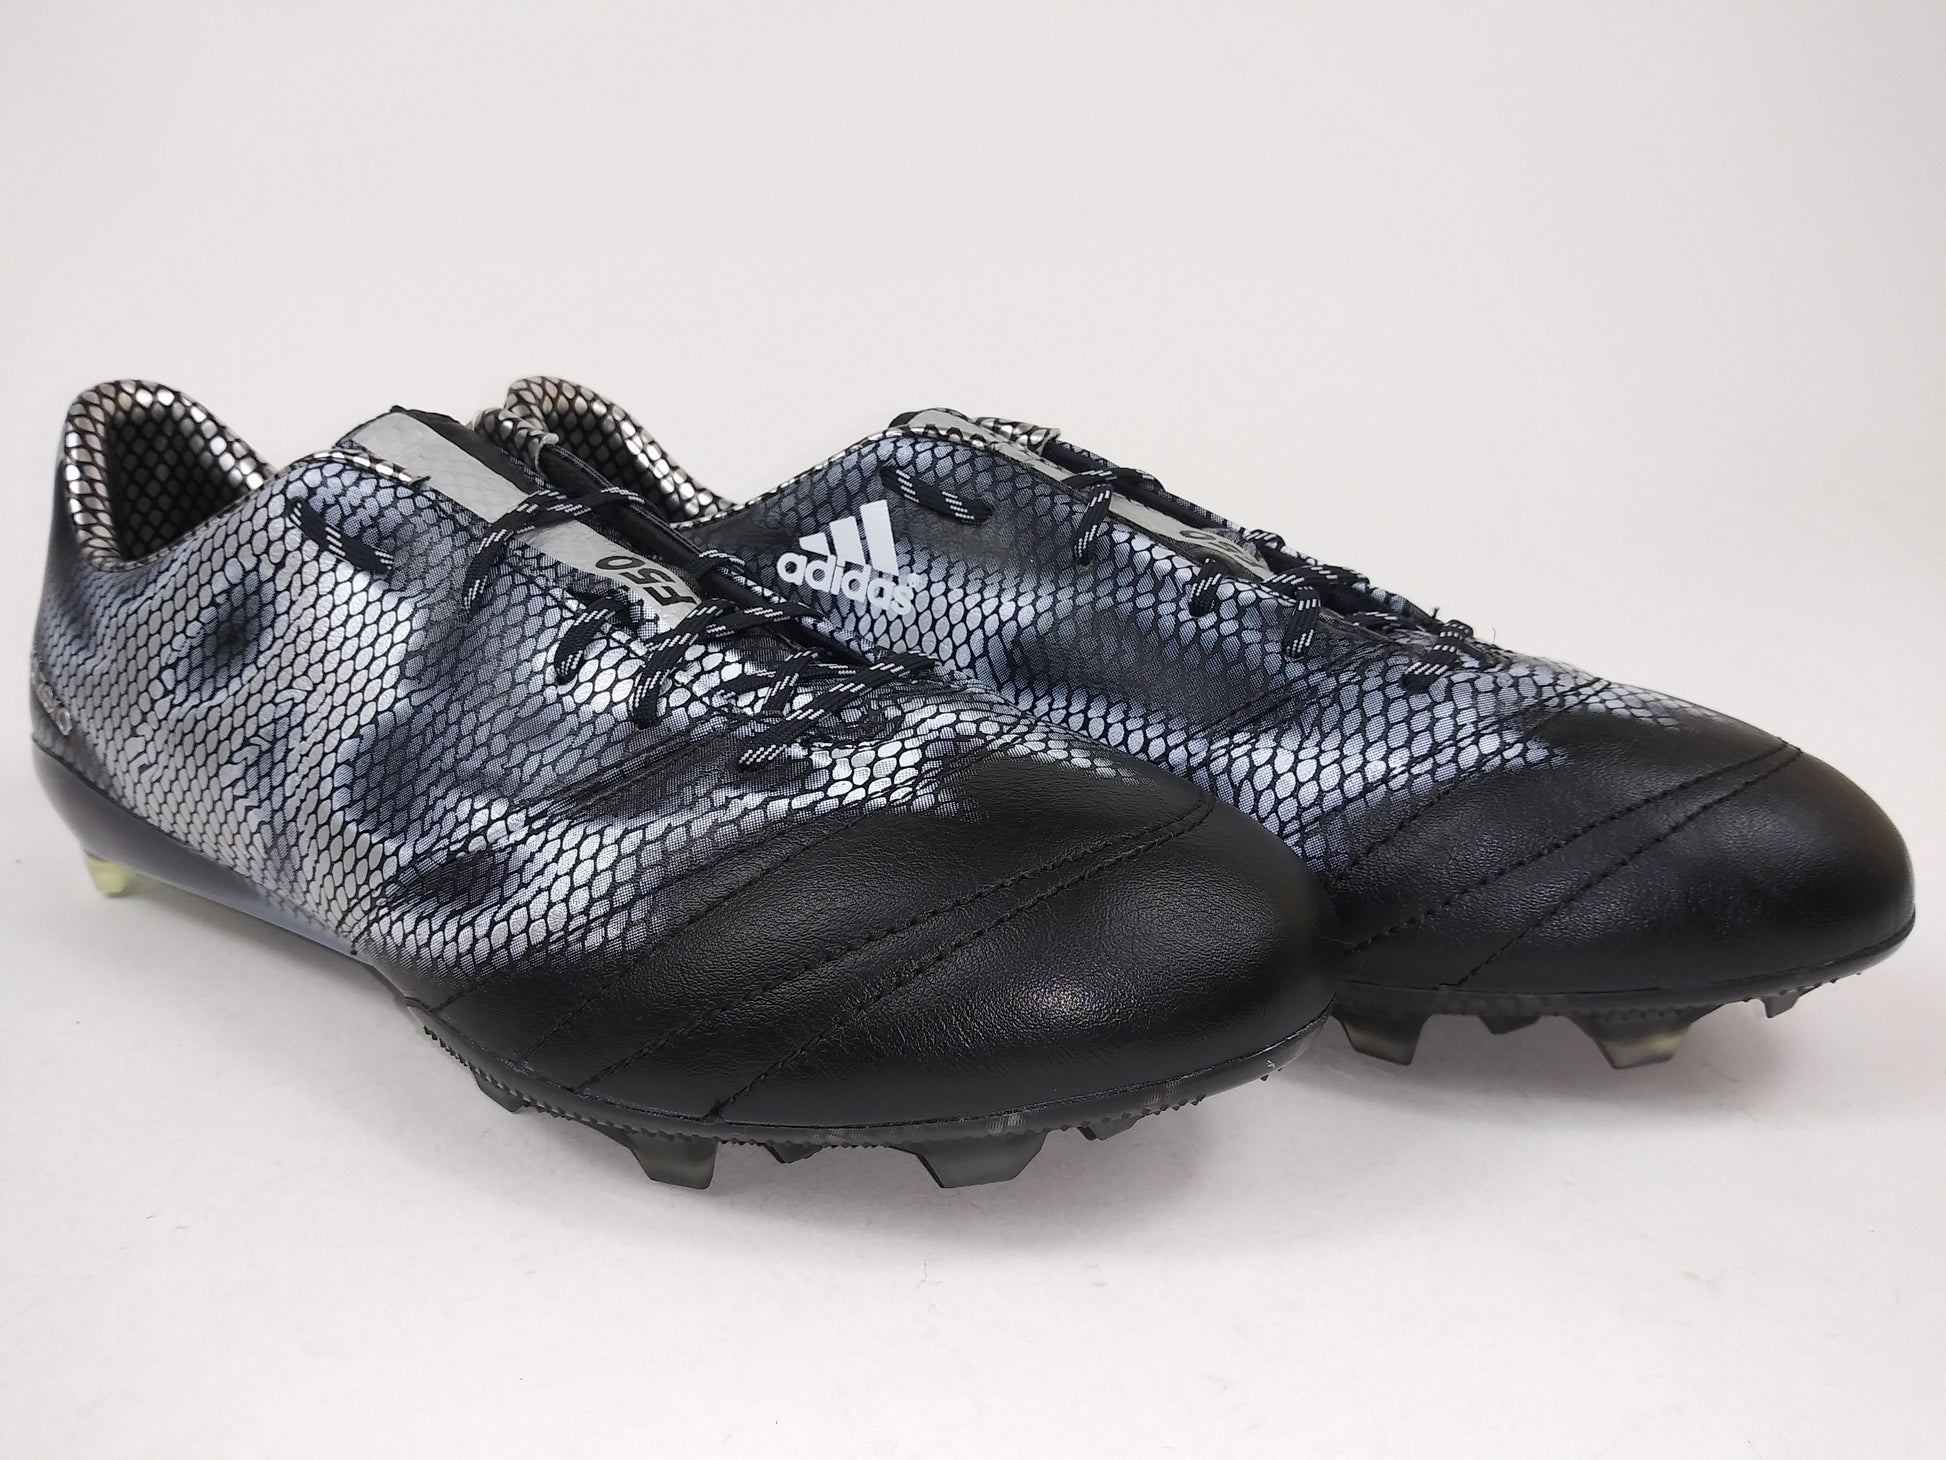 Adidas F50 Adizero FG Leather Black – Villegas Footwear